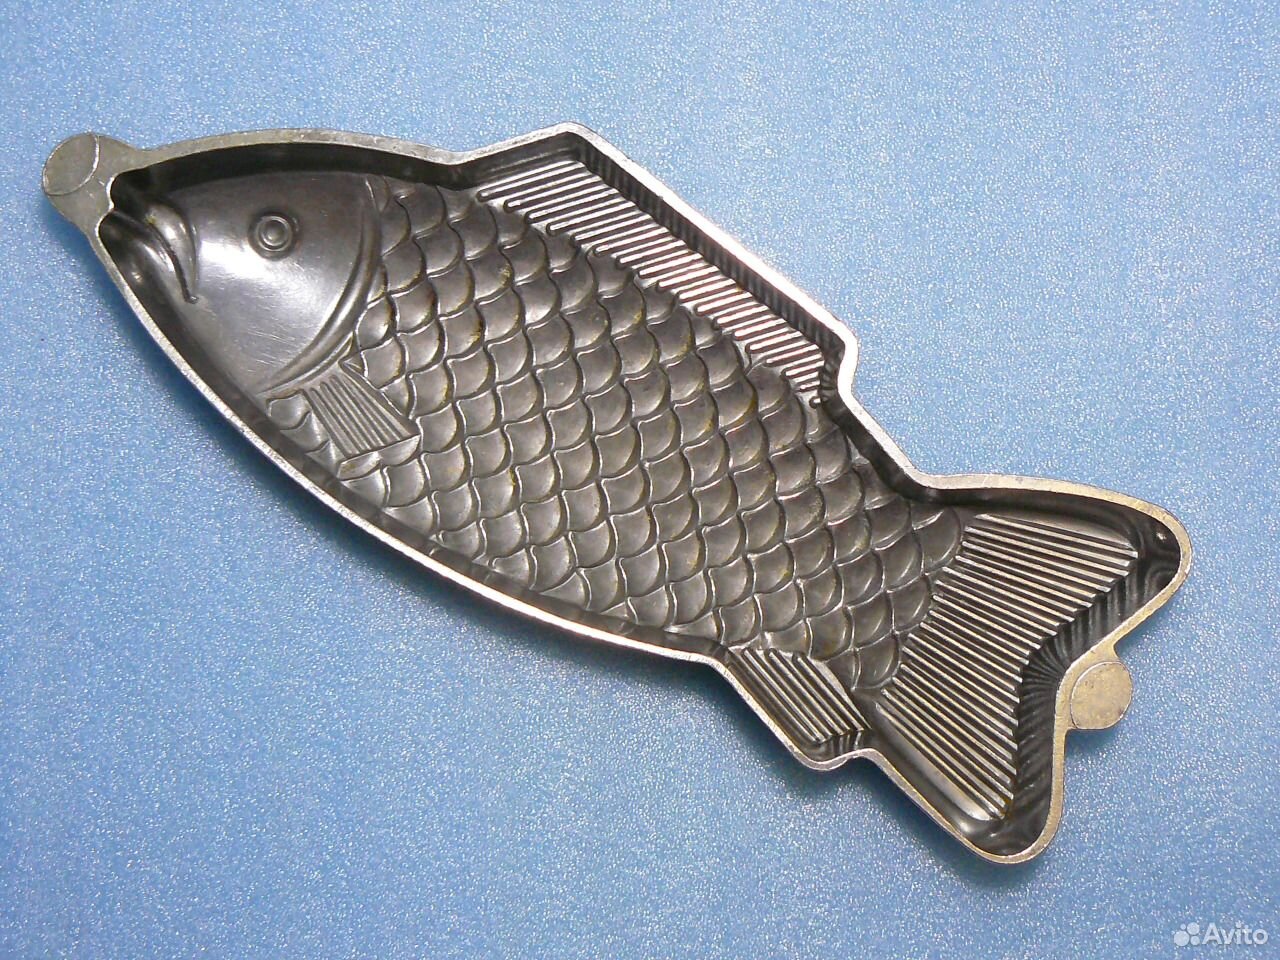 Купить форму рыба. Металлическая форма рыбка. Форма для заливного рыба. Форма для запекания в виде рыбы. Советские металлические формы для заливного.